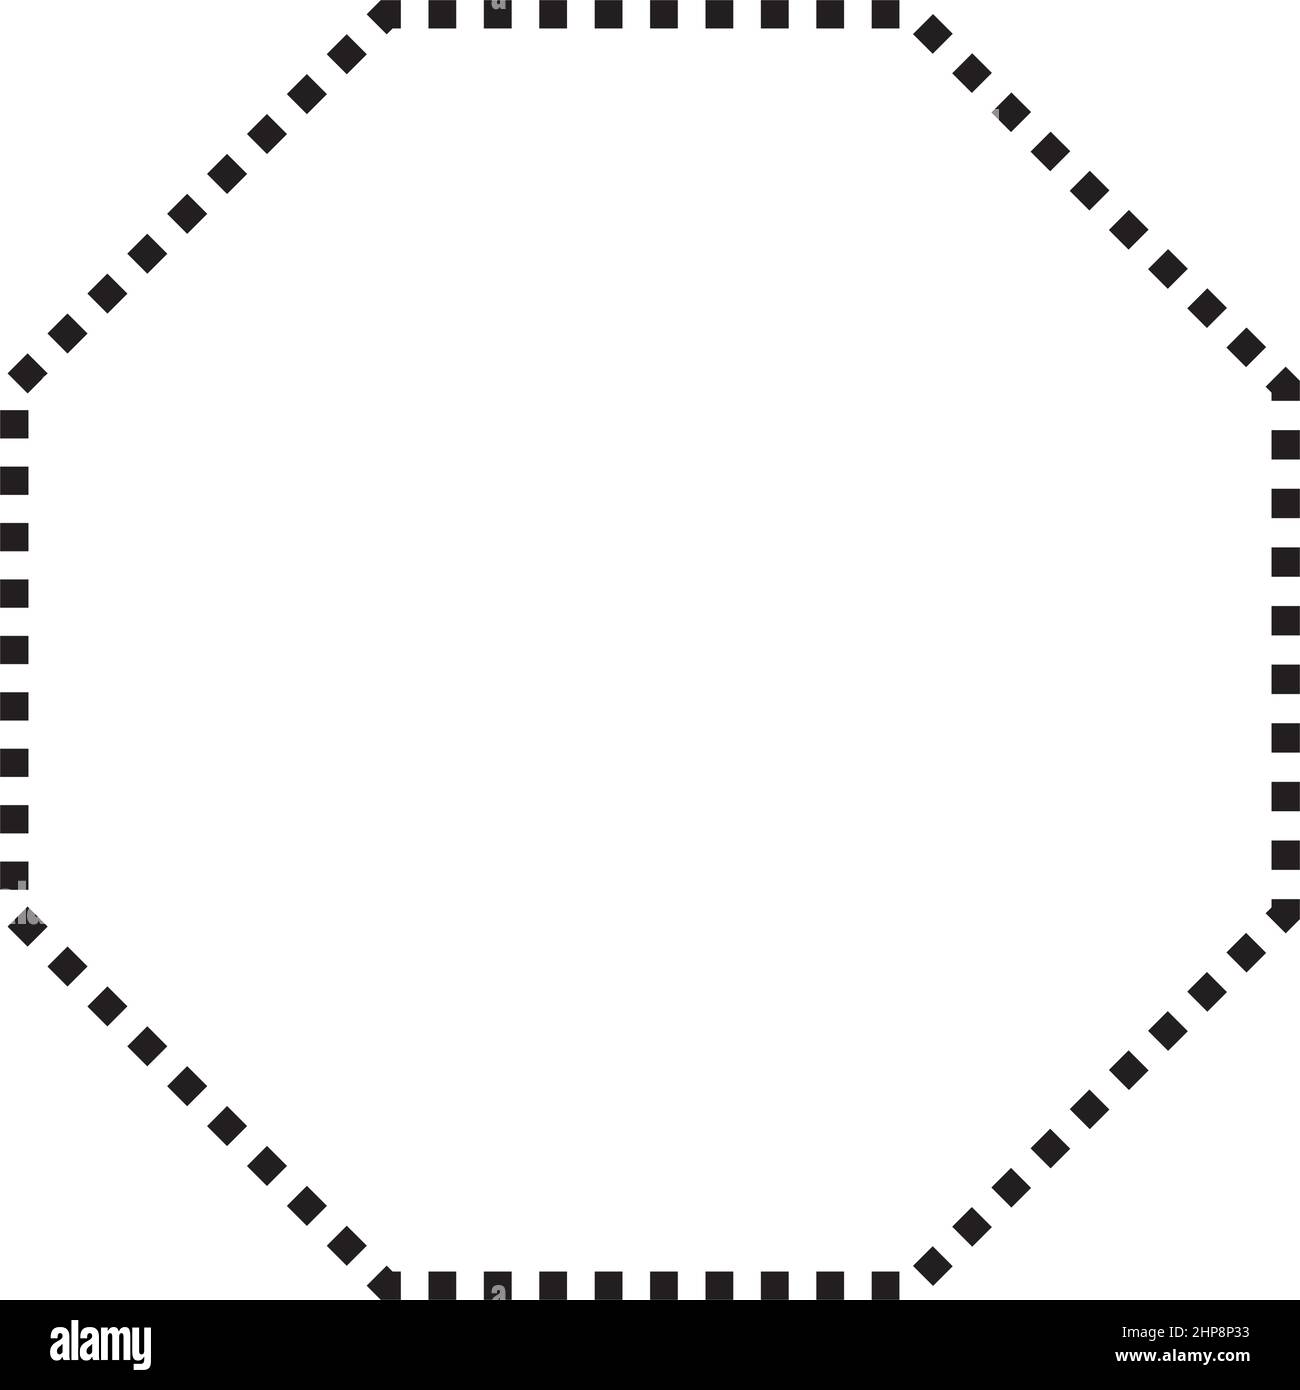 Octagon Symbol gepunktete Form Vektor-Symbol für kreative Grafik-Design-ui-Element in einem Piktogramm Illustration Stock Vektor